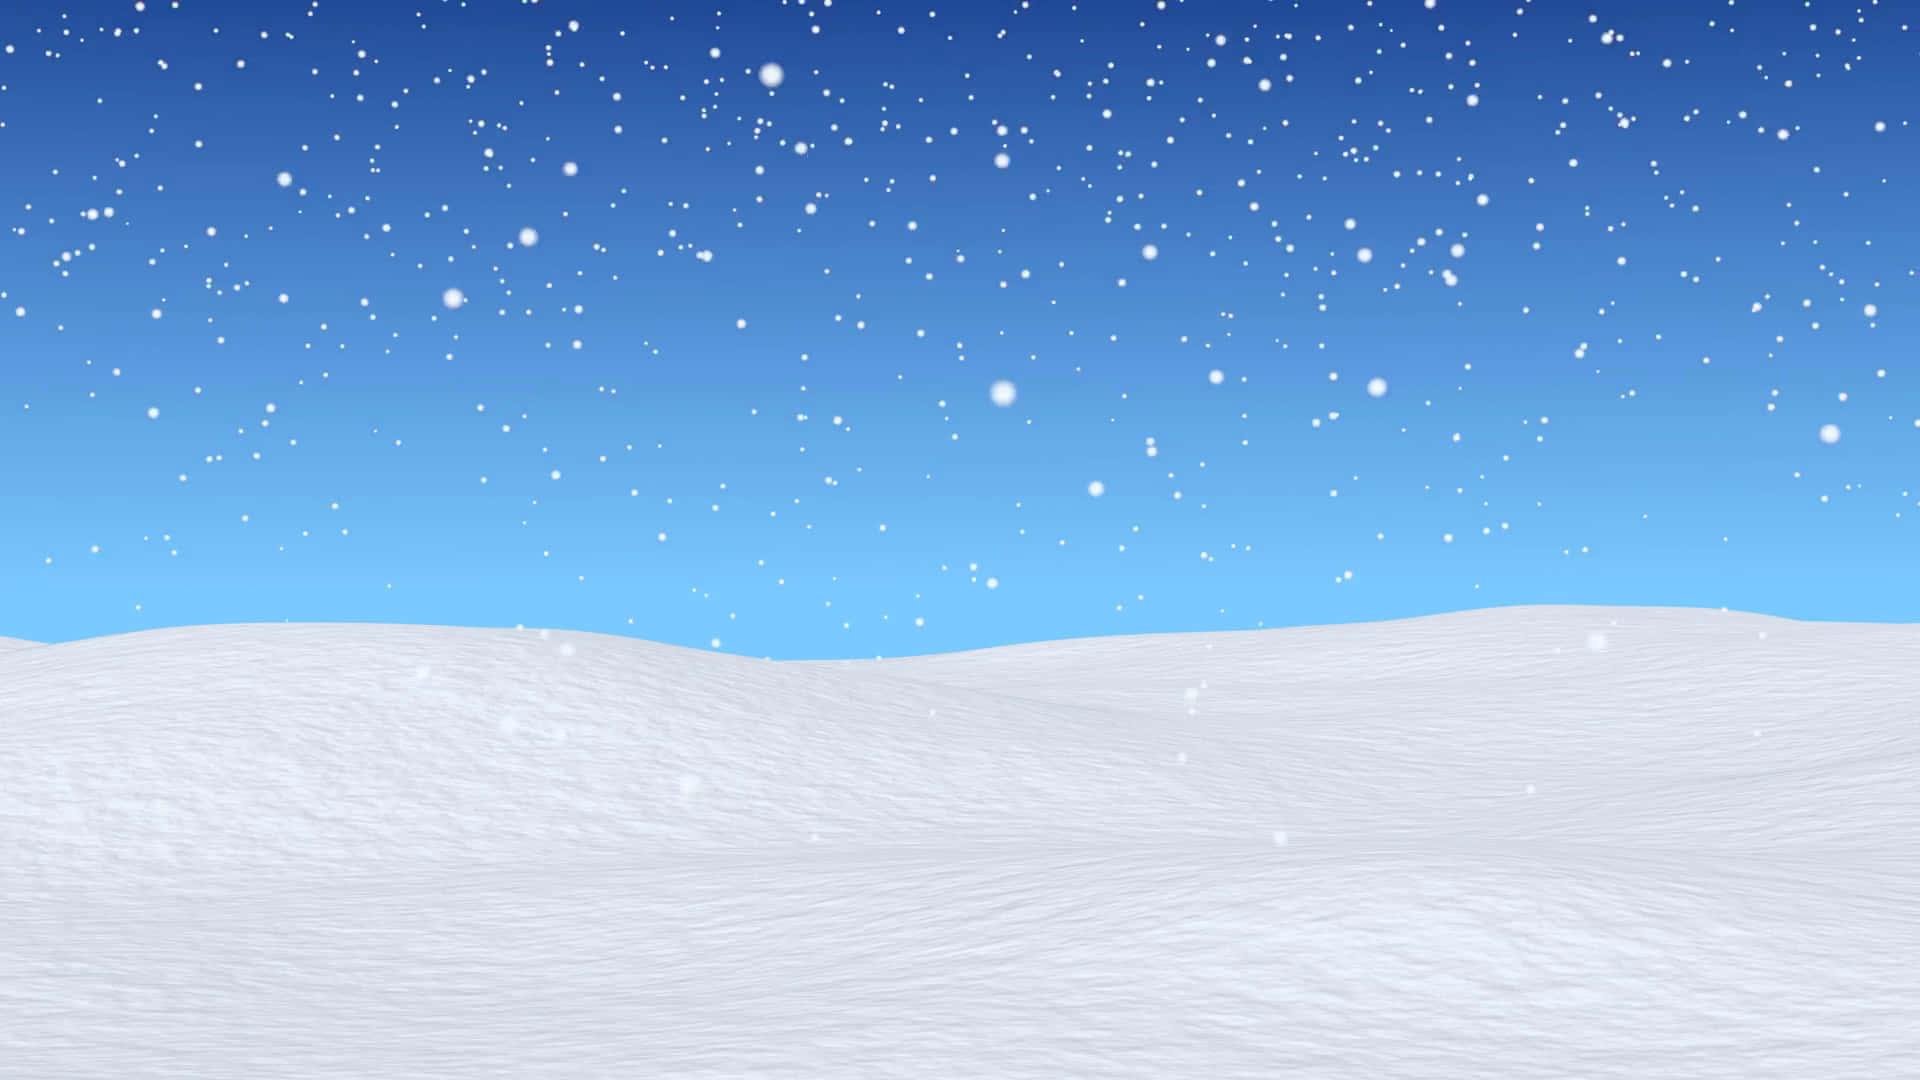 Genießensie Das Winterwunderland Mit Einer Wunderschönen Verschneiten Hintergrundkulisse.